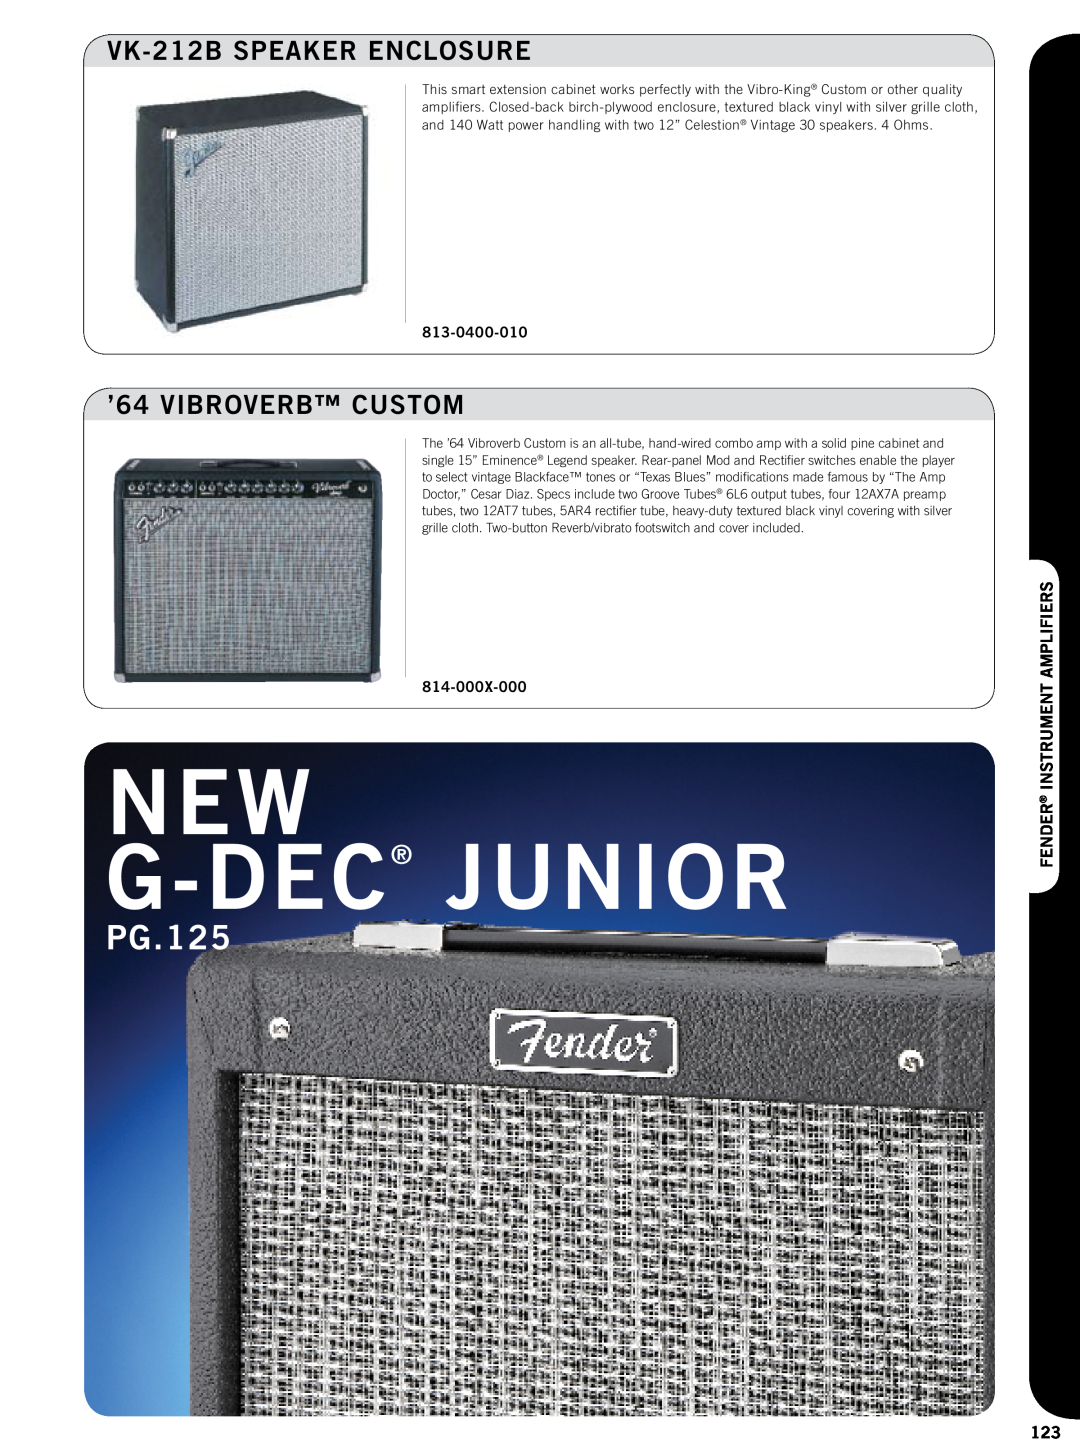 Fender 814-050X-000 New G-Dec Junior, PG.125, VK-212BSPEAKER ENCLOSURE, ’64 VIBROVERB CUSTOM, 813-0400-010, 814-000X-000 